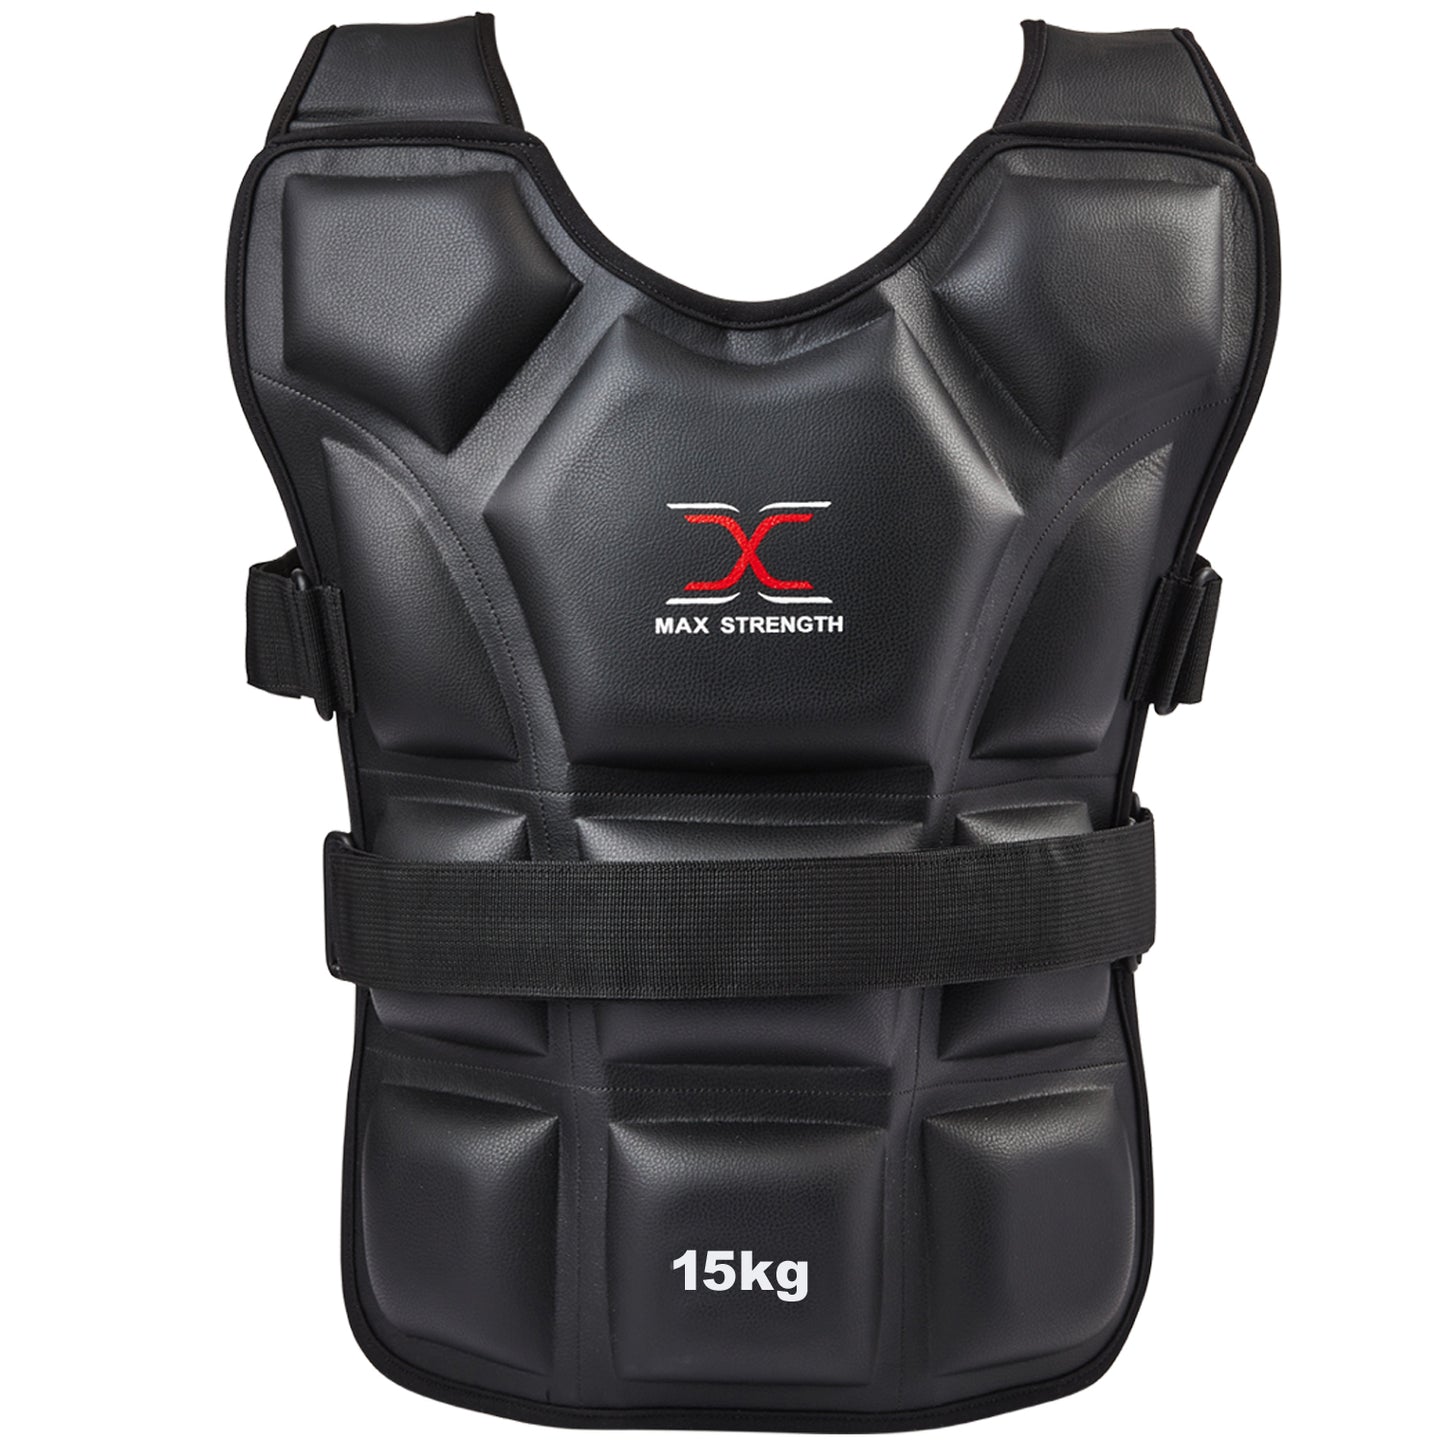 15kg workout vest